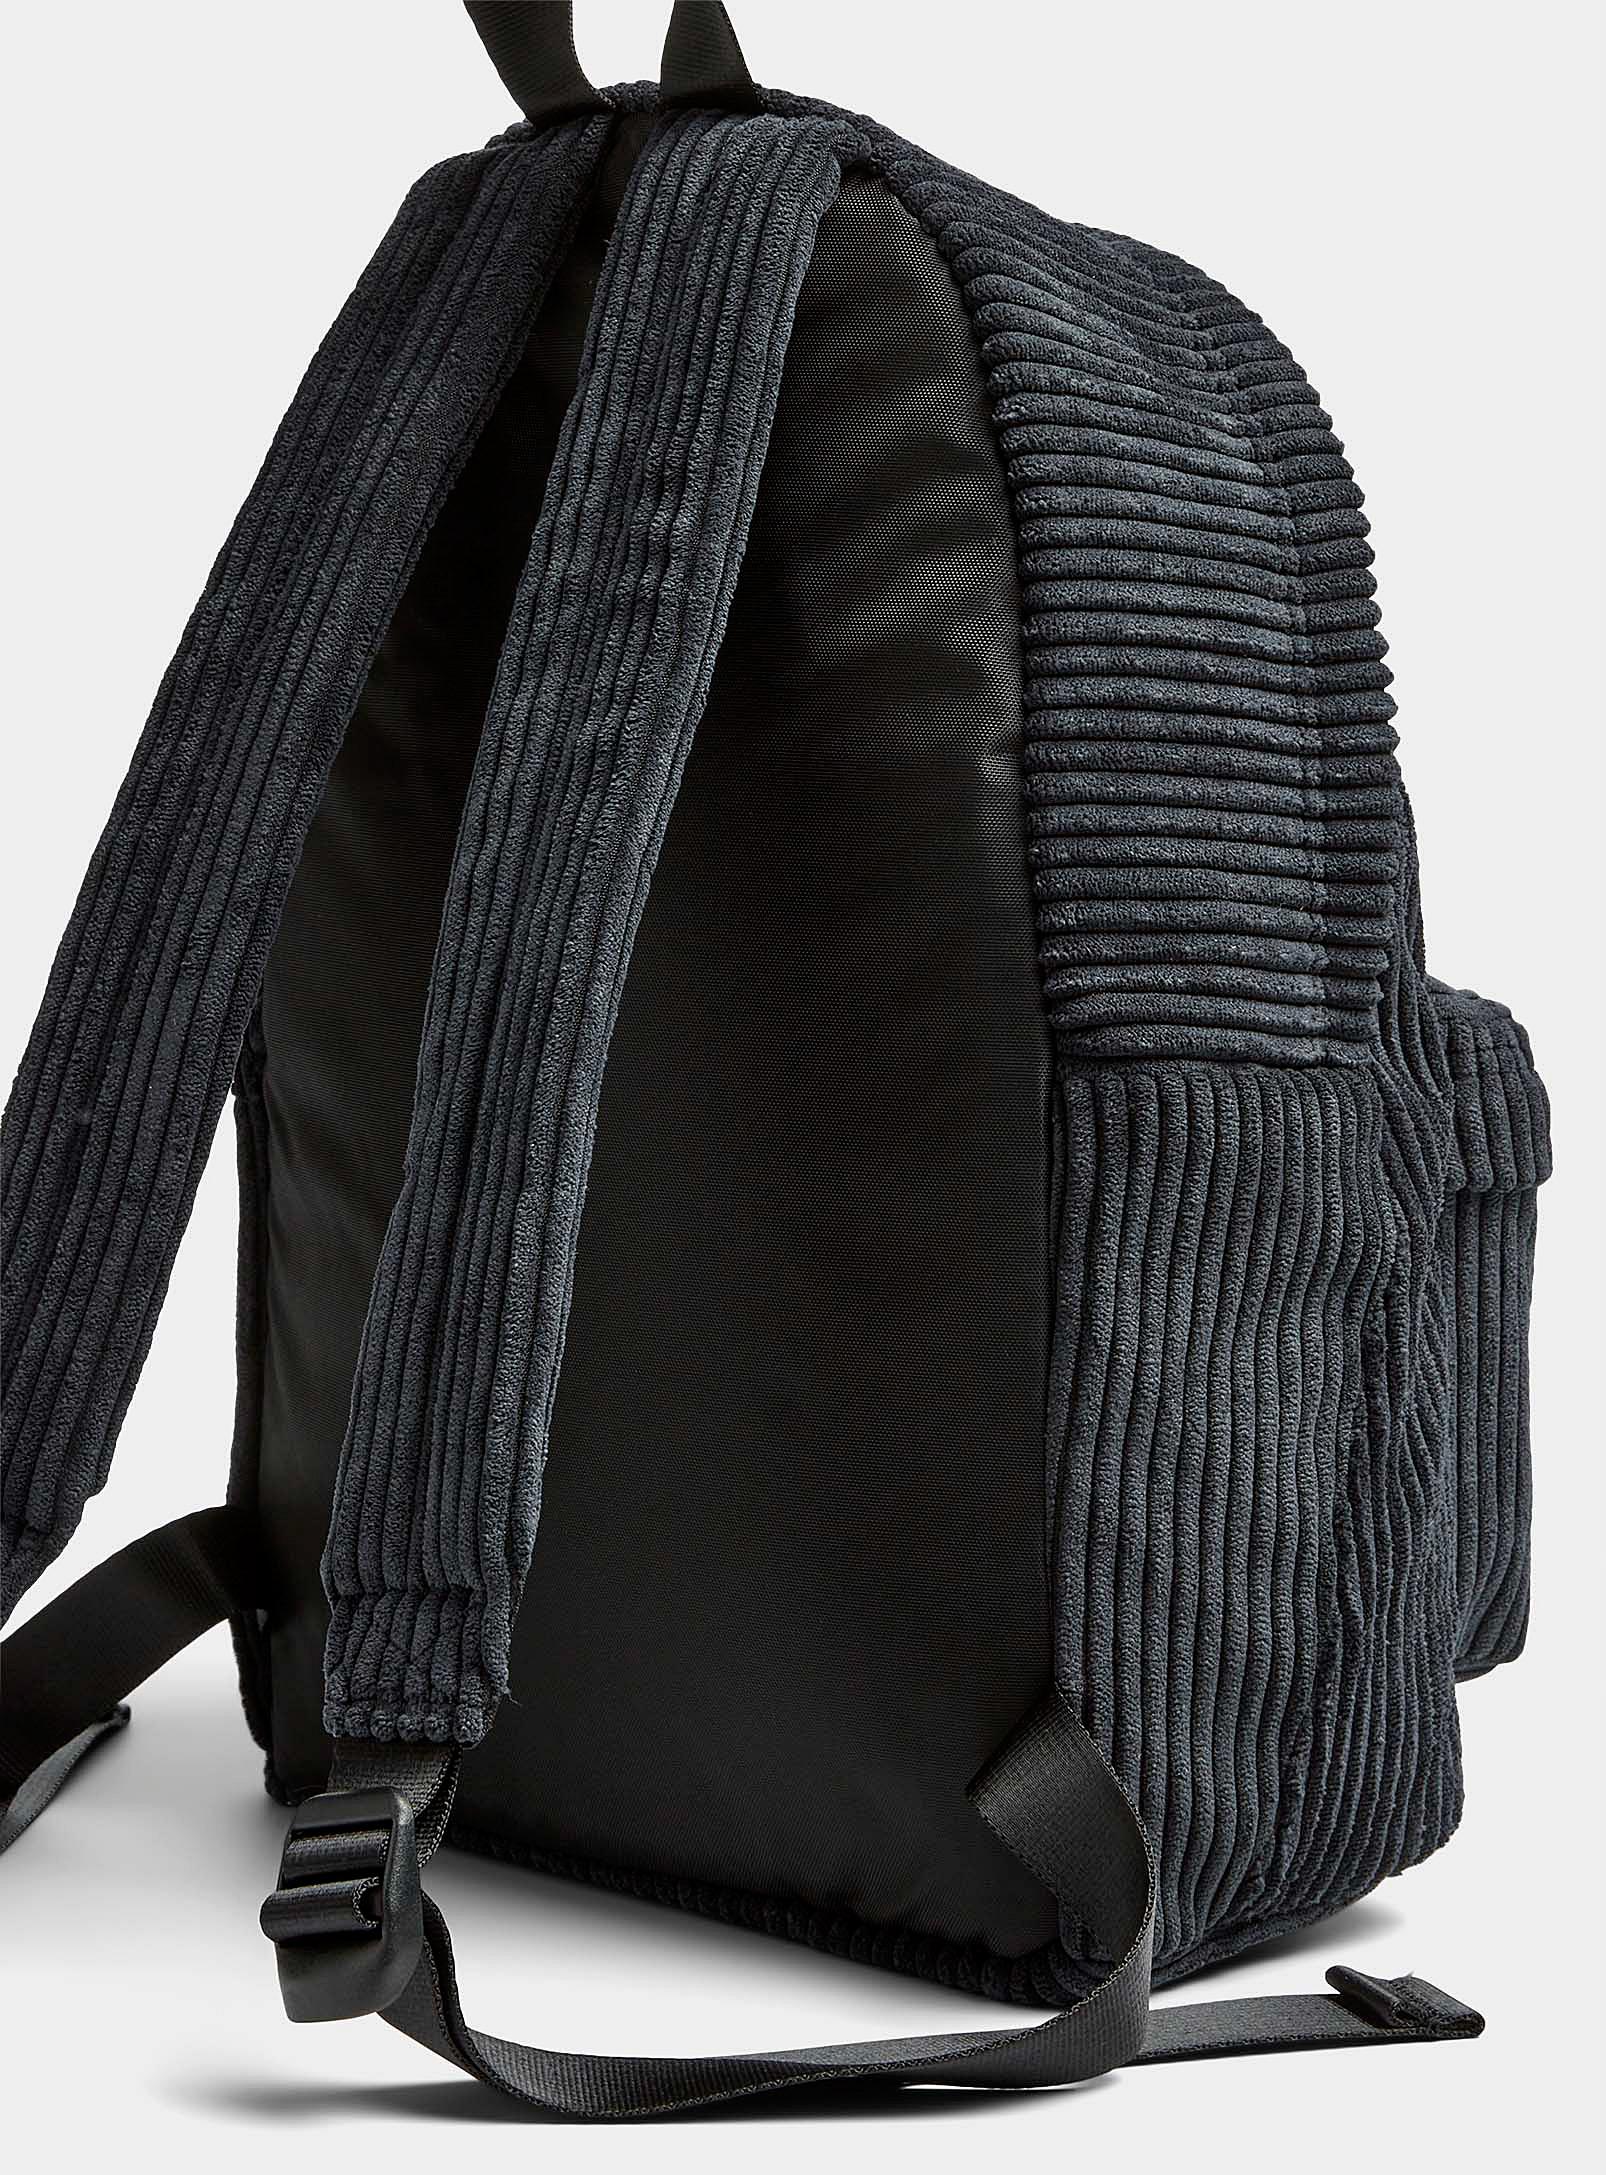 Eastpak Orbit Corduroy Backpack in Black | Lyst